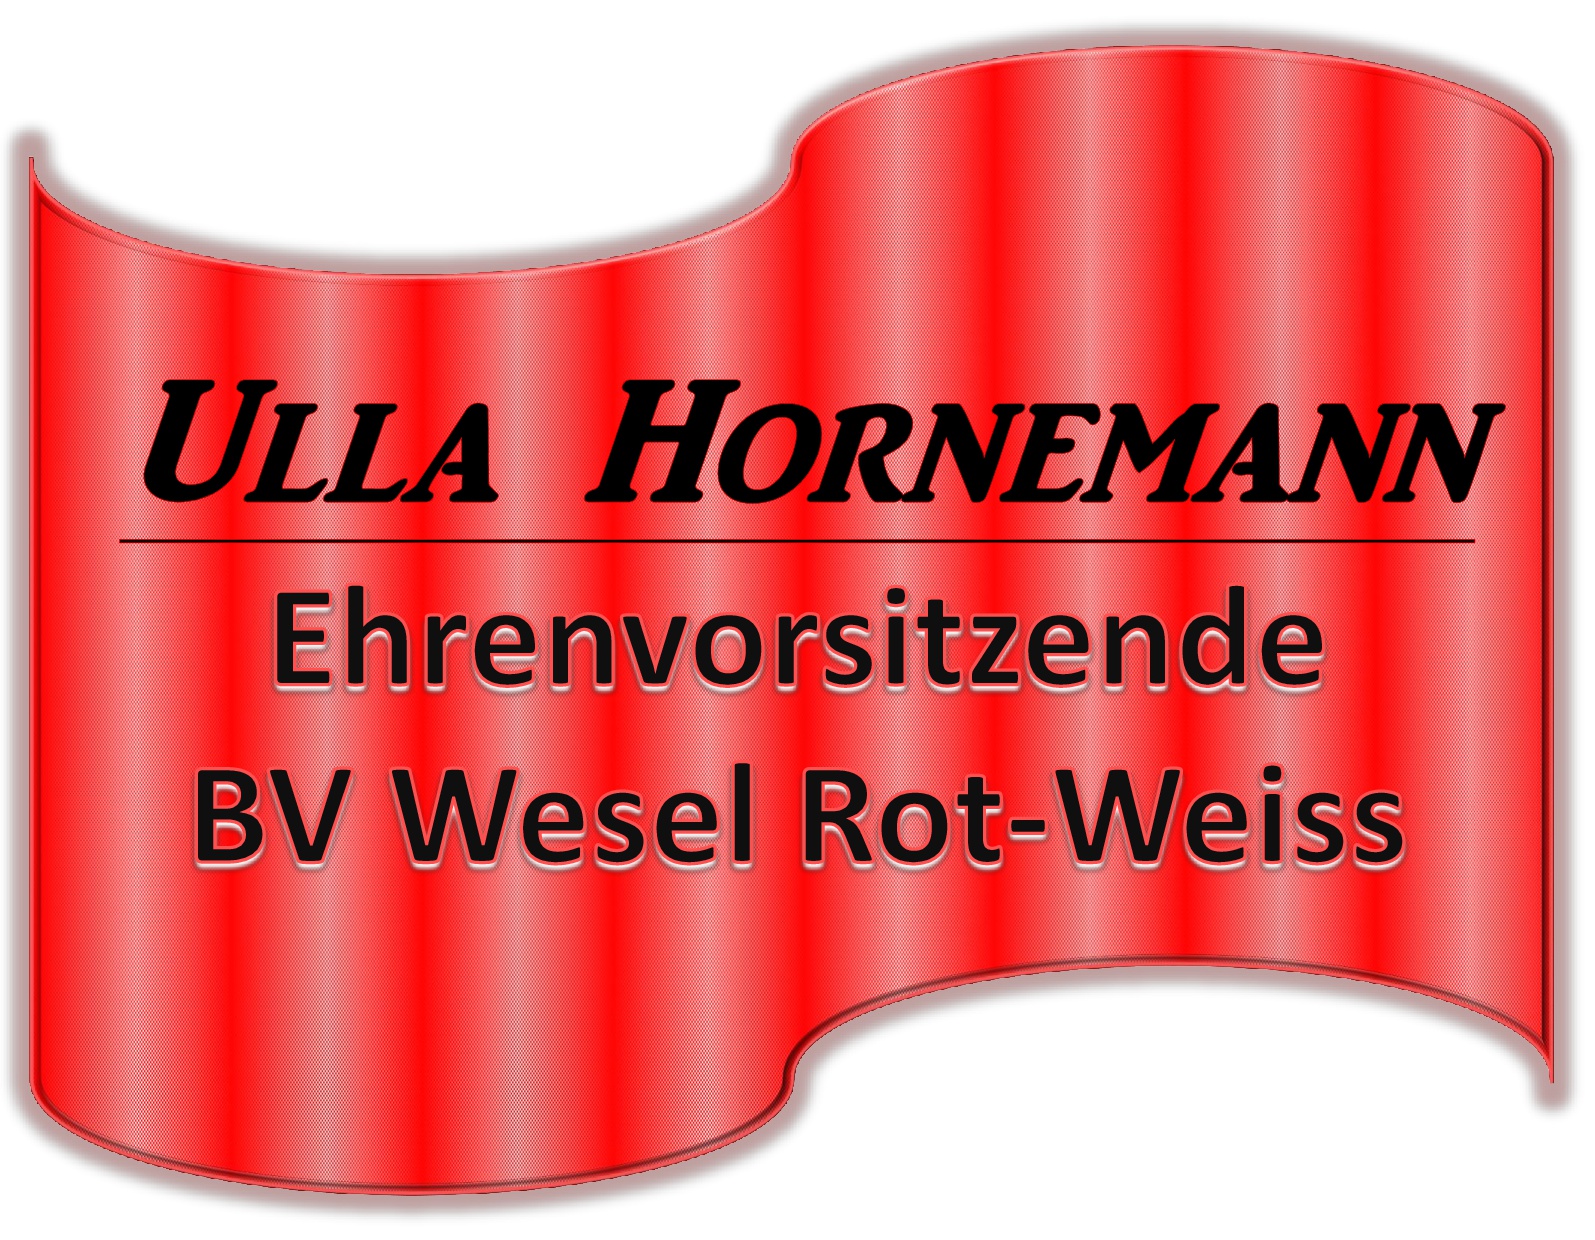 Logo Hornemann Ulla 20160525